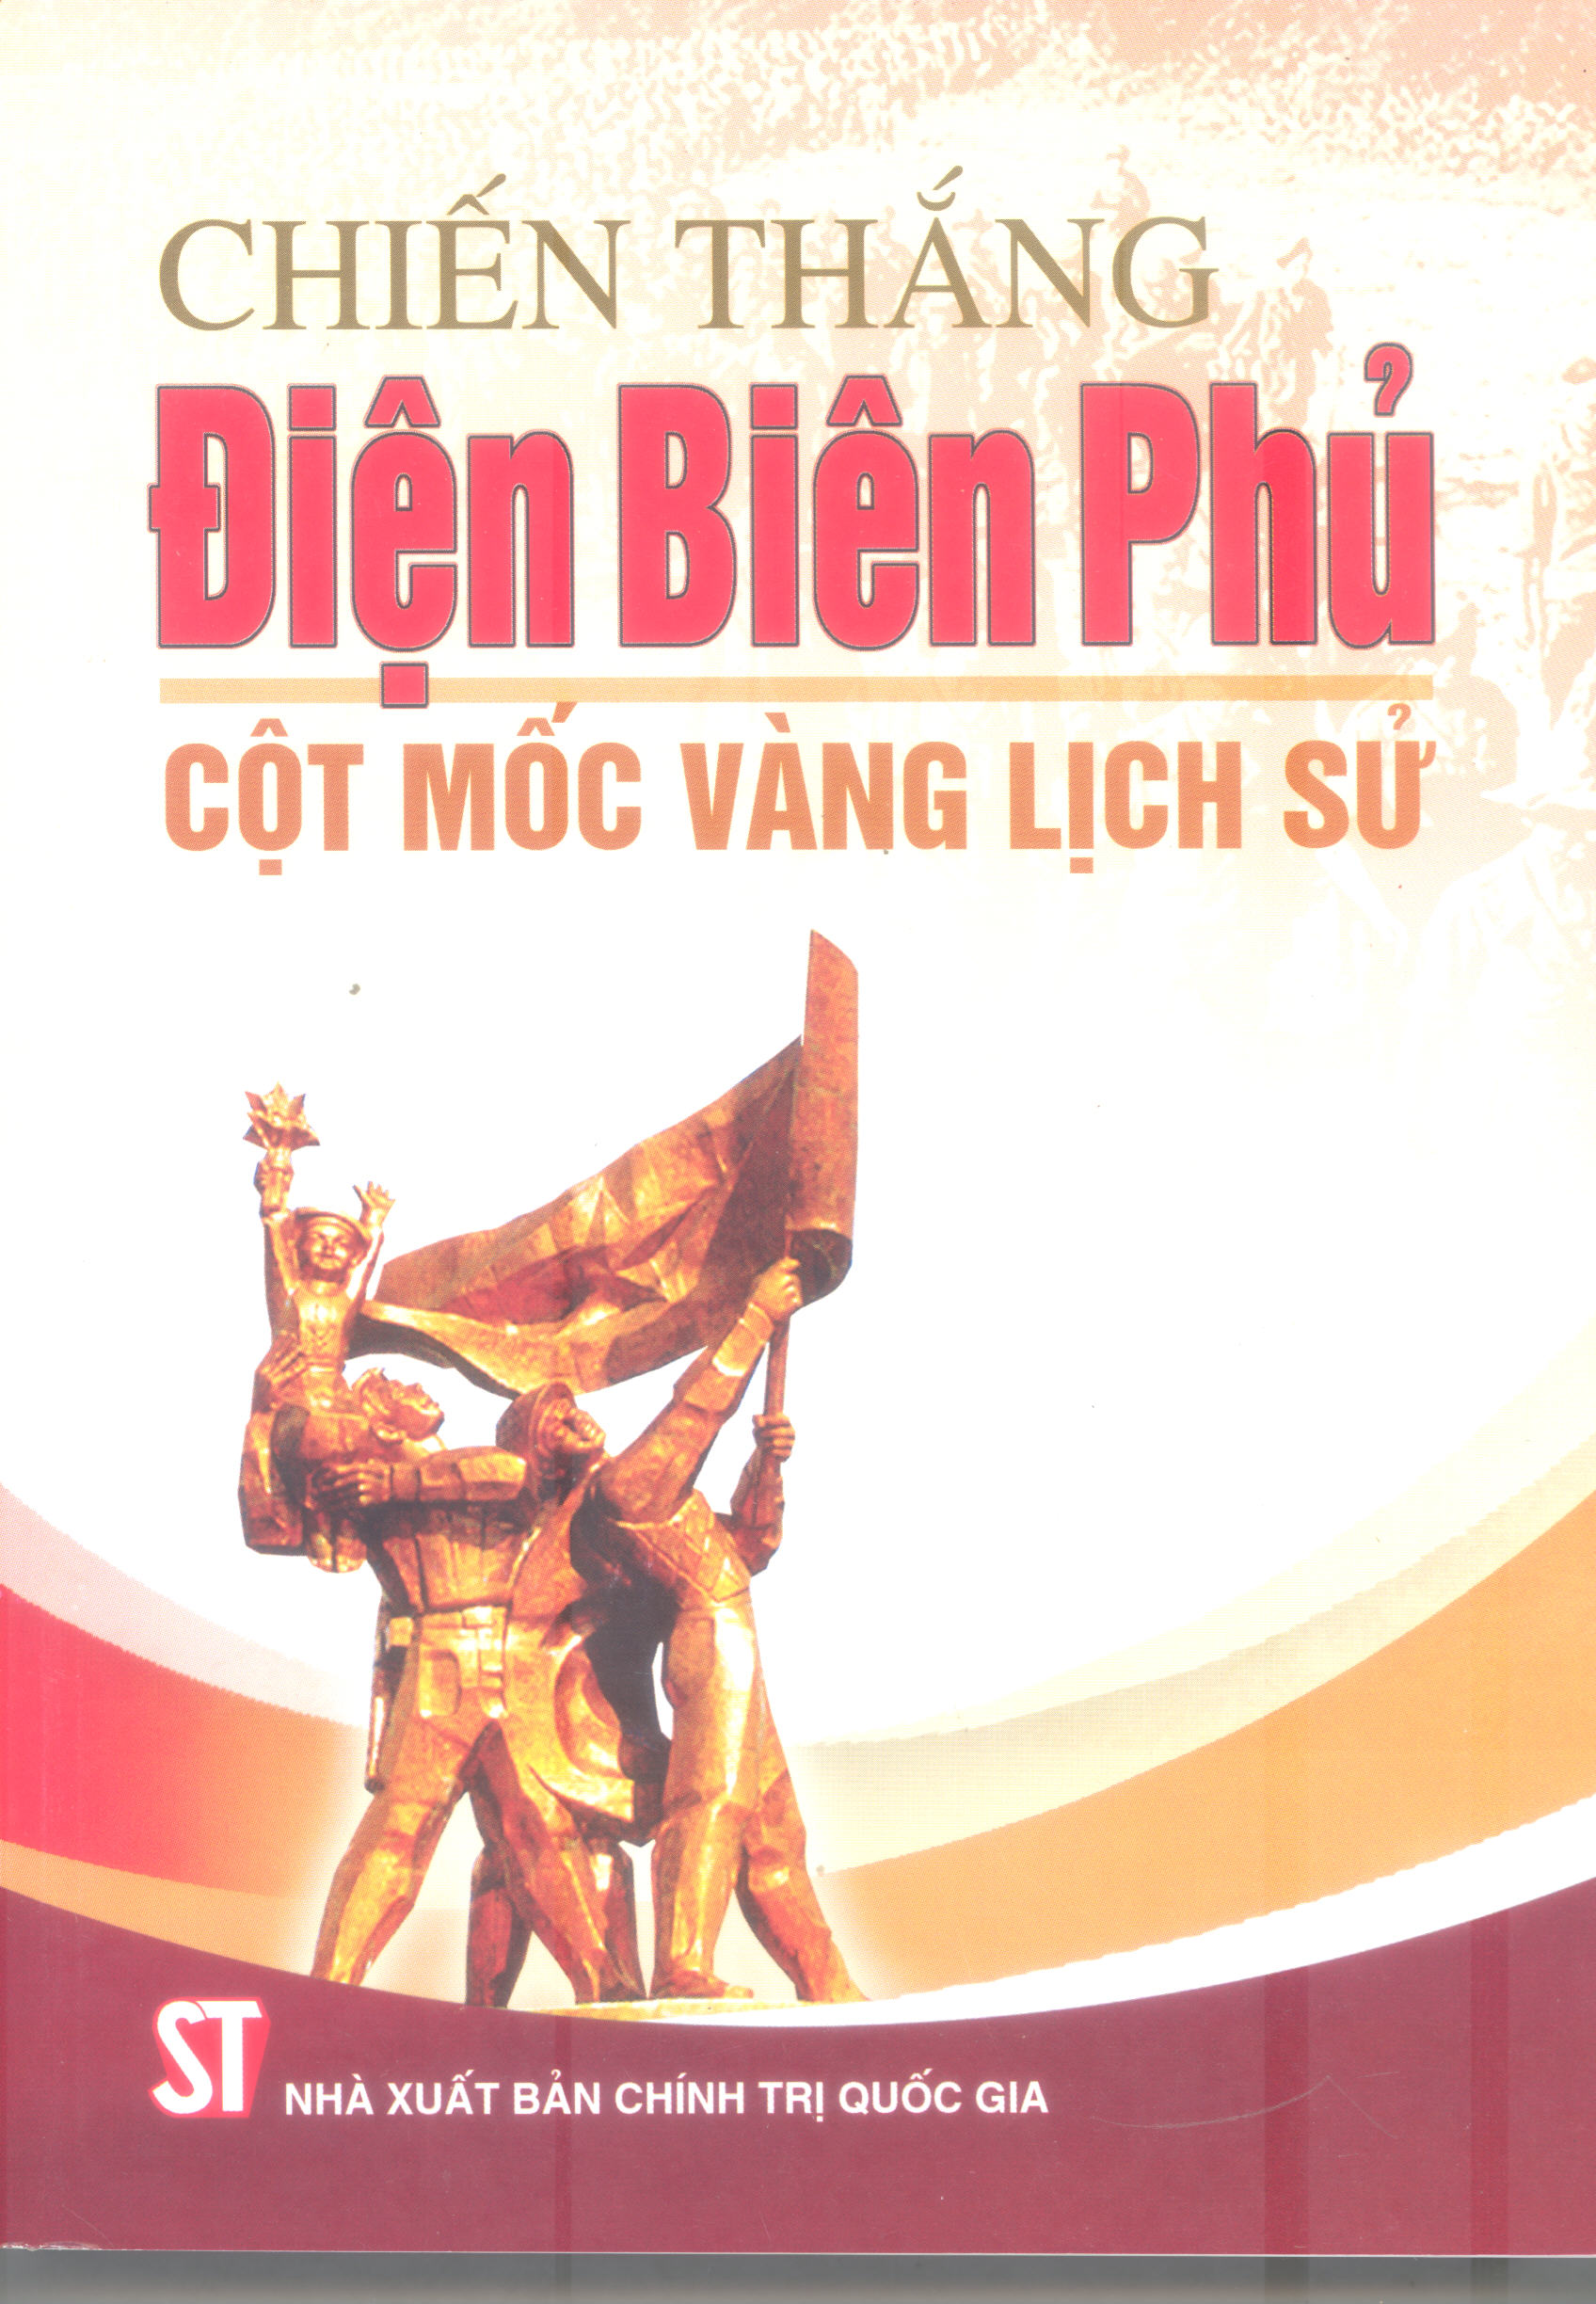 Chiến thắng Điện Biên Phủ - Cột mốc vàng lịch sử